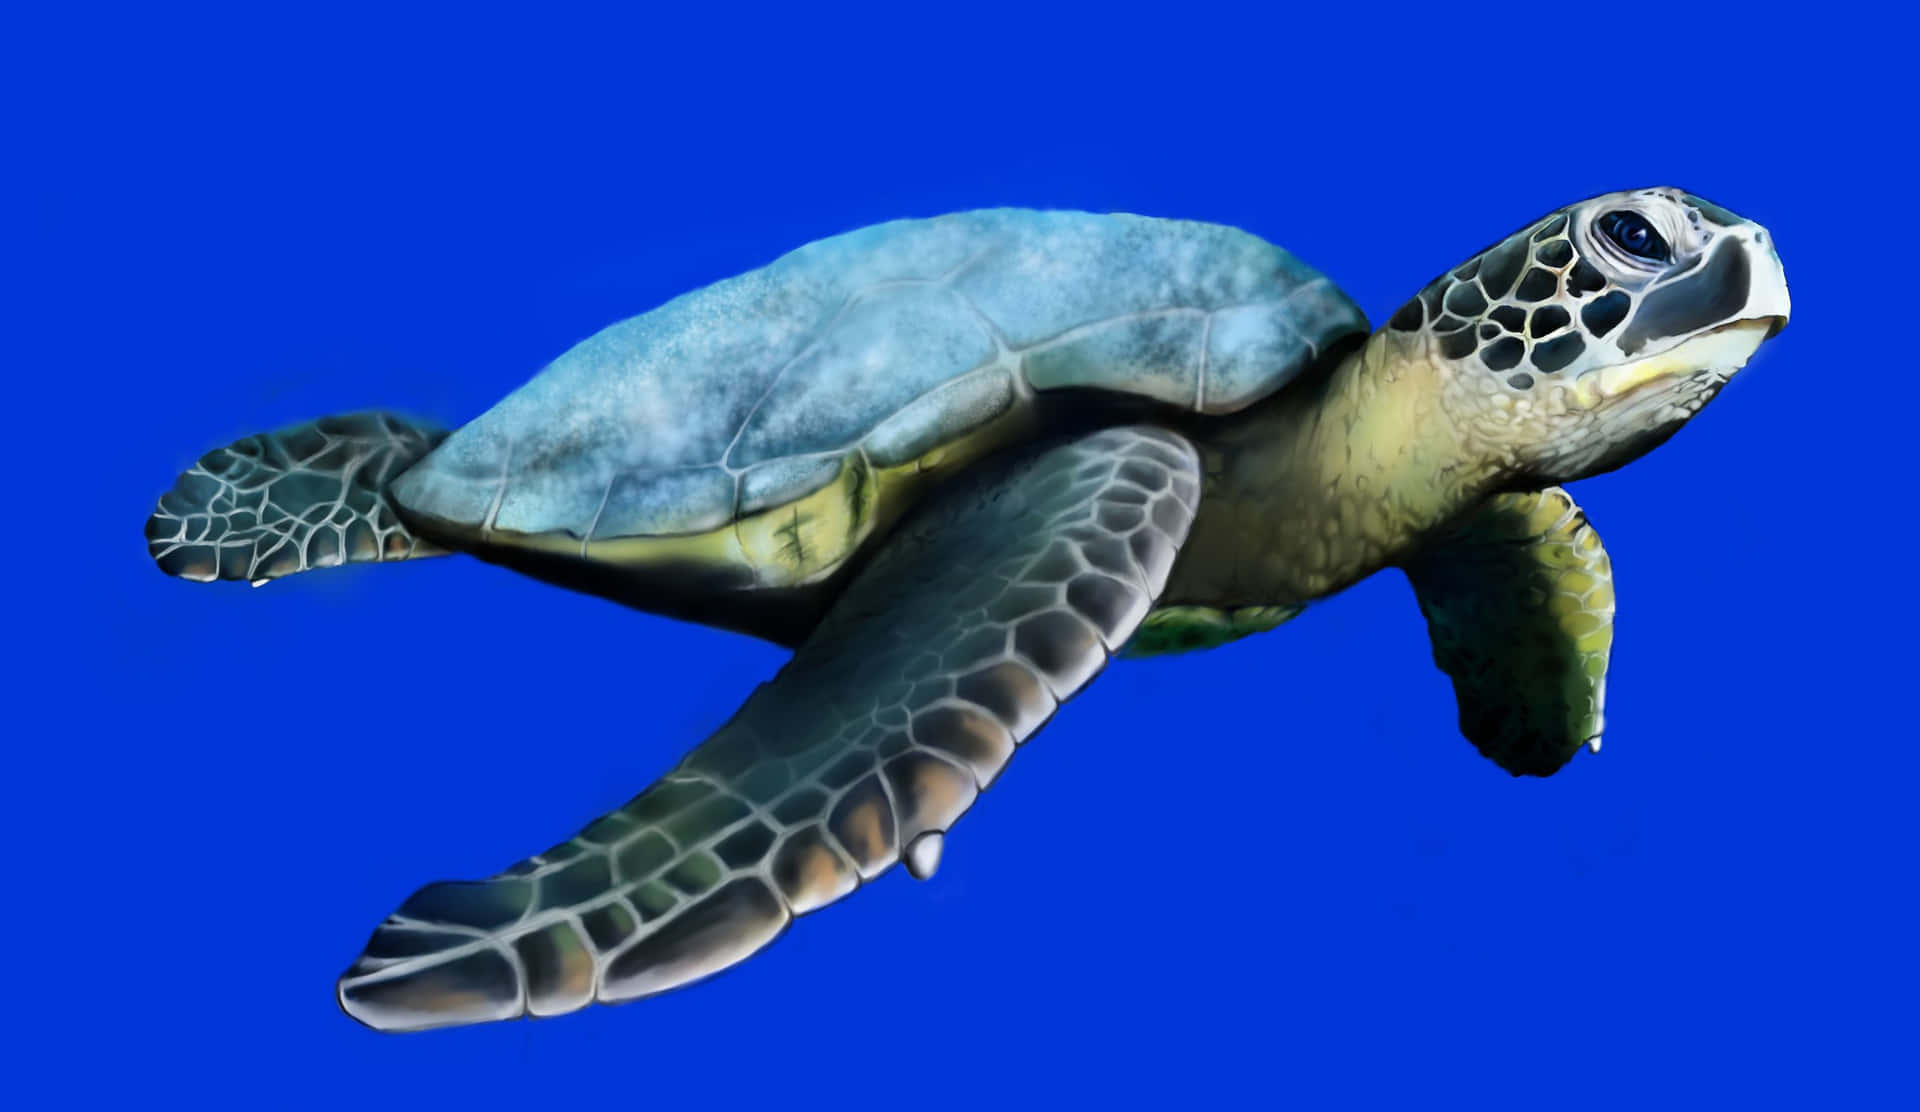 Einemeeresschildkröte Navigiert Elegant Durch Die Warmen Ozeanwasser.